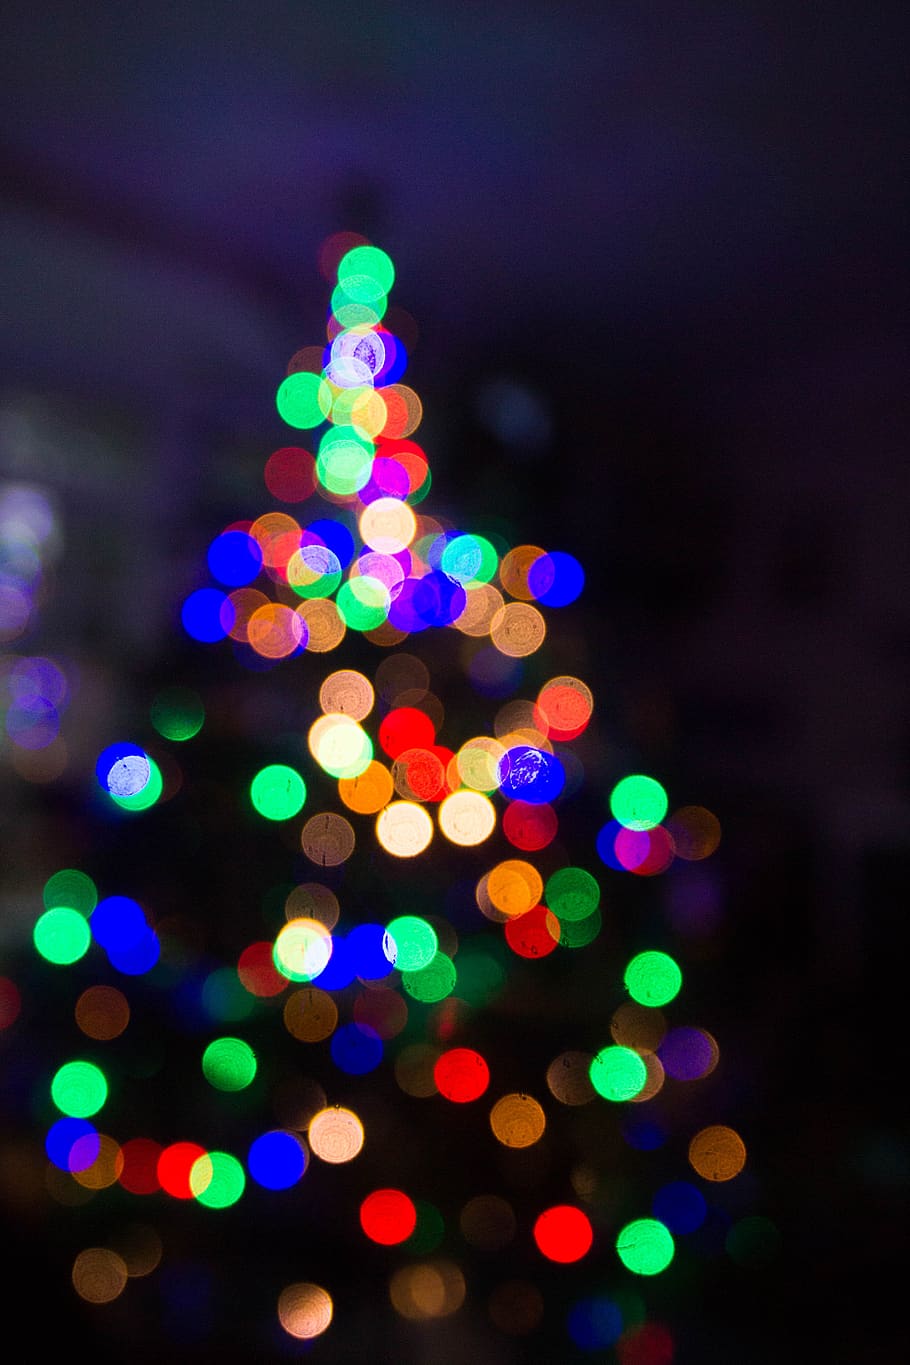 escuro, noite, natal, colorido, luzes, iluminação, bokeh, iluminado, decoração, multicolorido